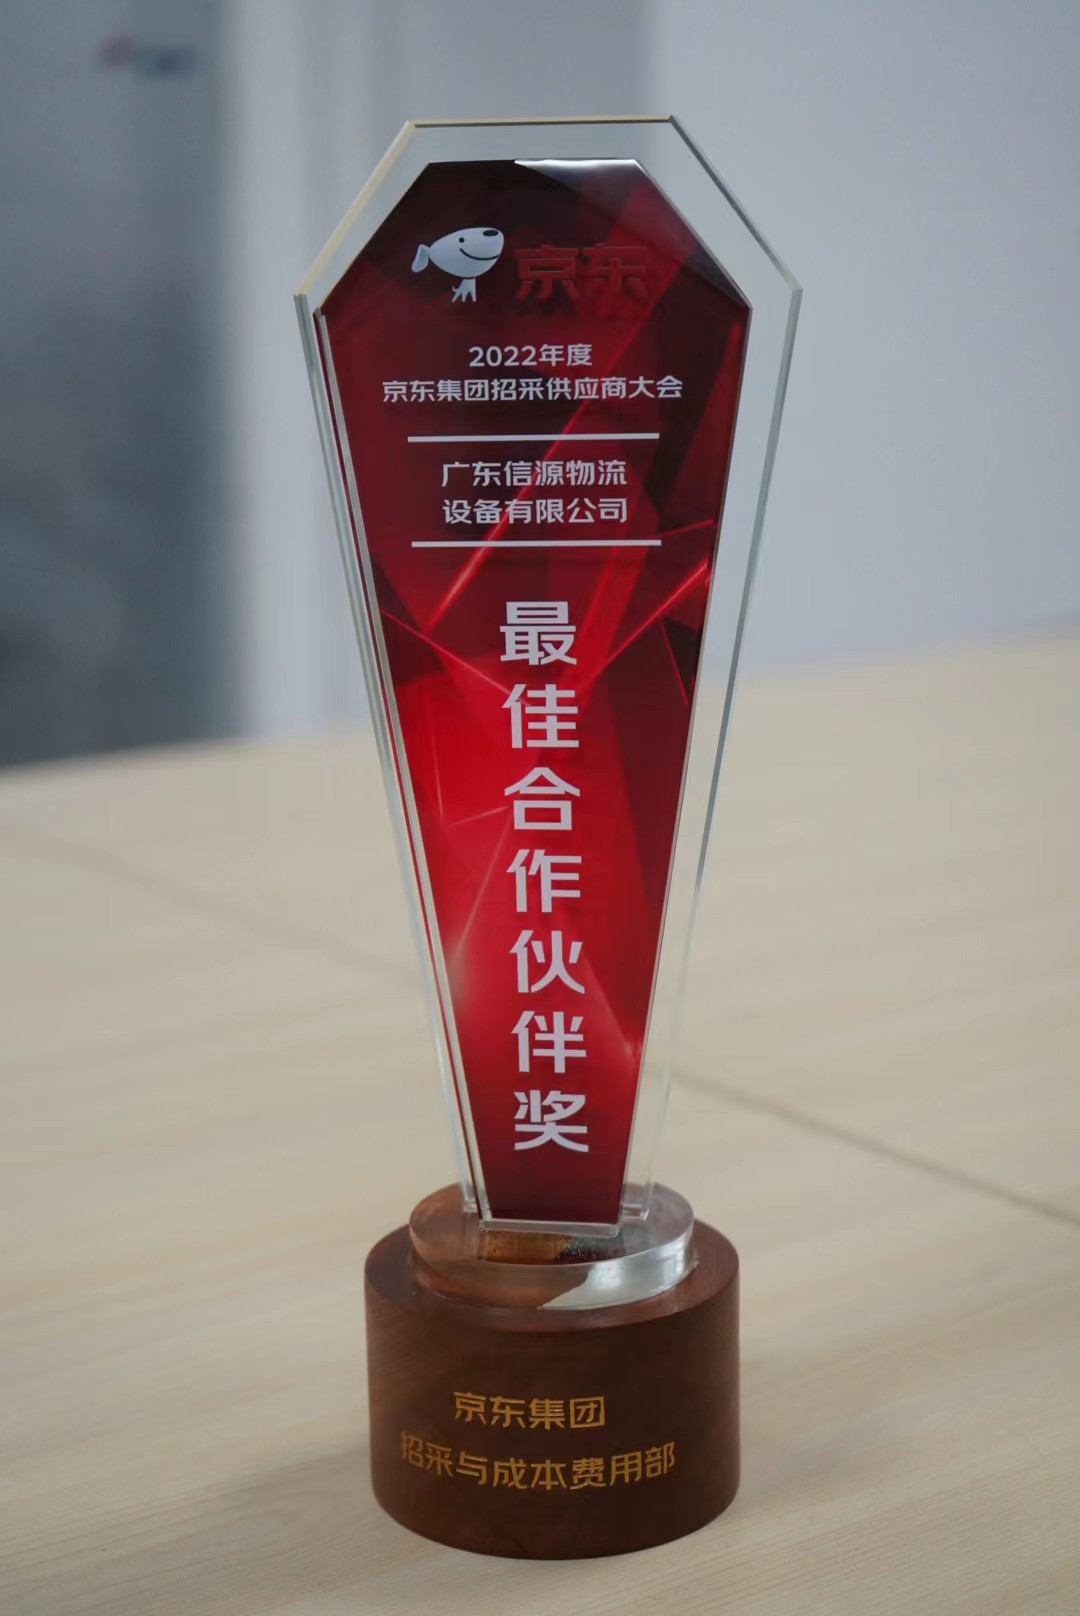 2022年度京東集團“最佳合作夥伴獎”